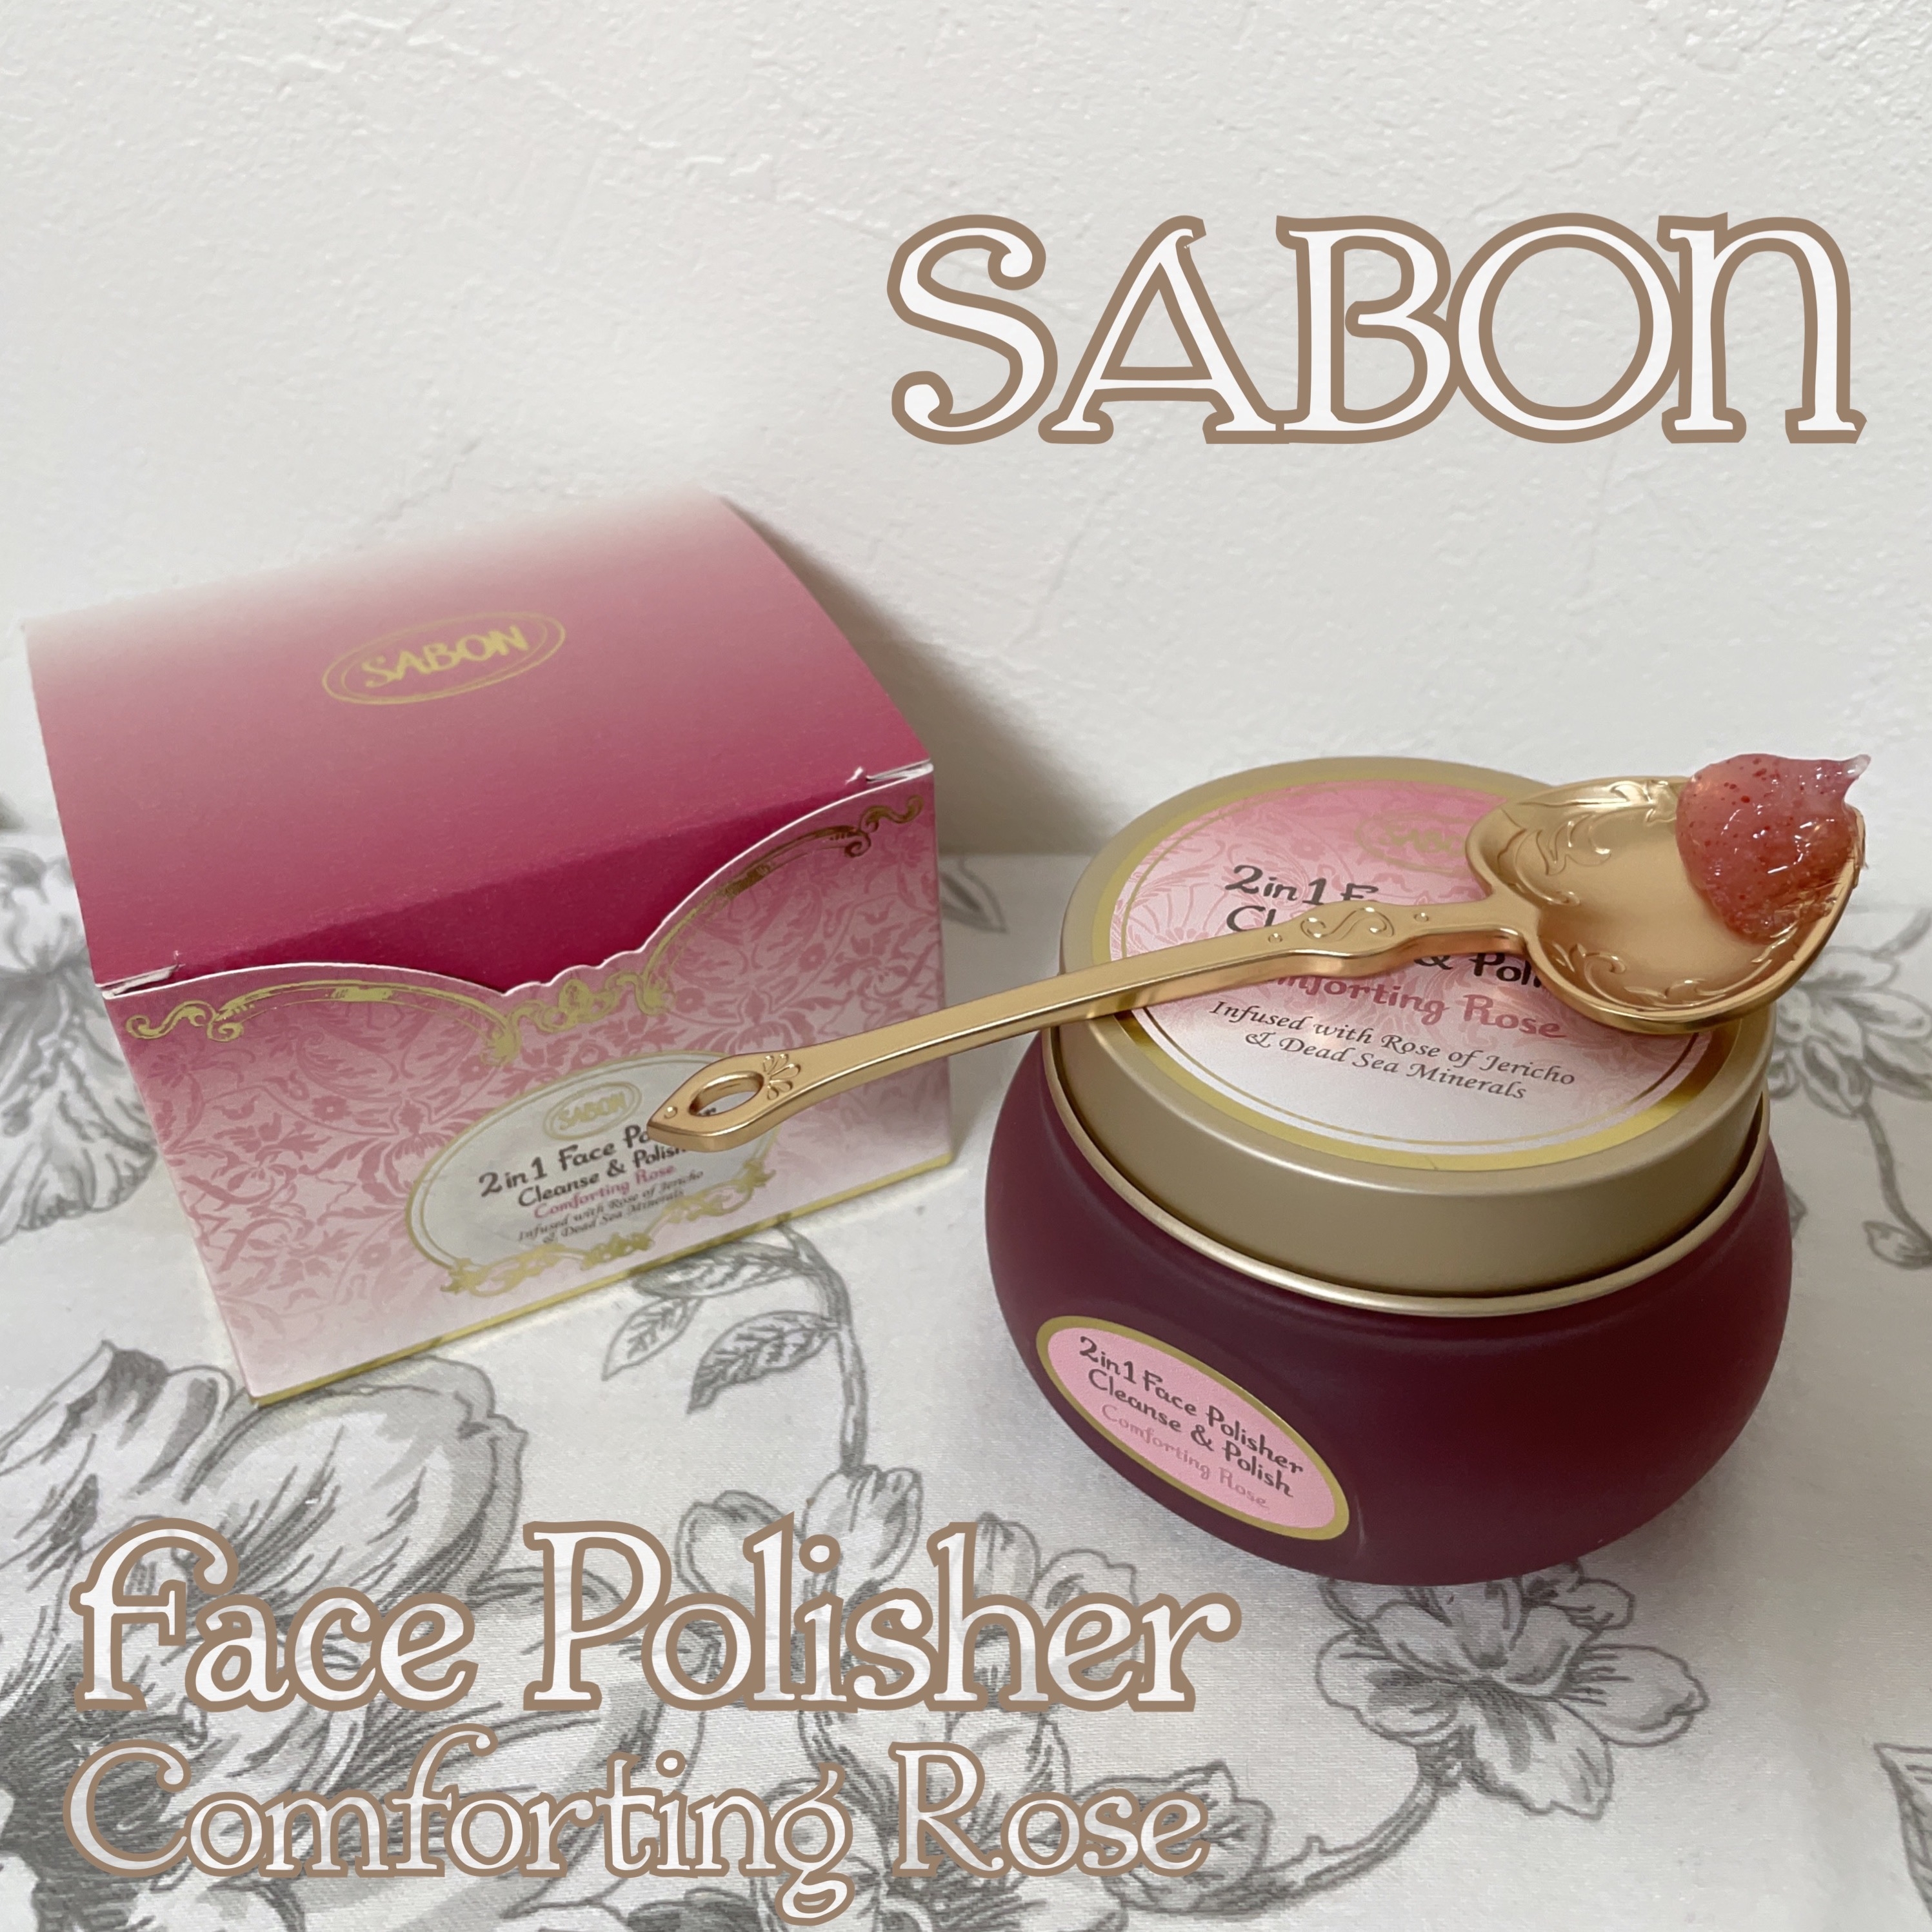 SABON(サボン) フェイスポリッシャー コンフォーティング・ローズの良い点・メリットに関するもいさんの口コミ画像1